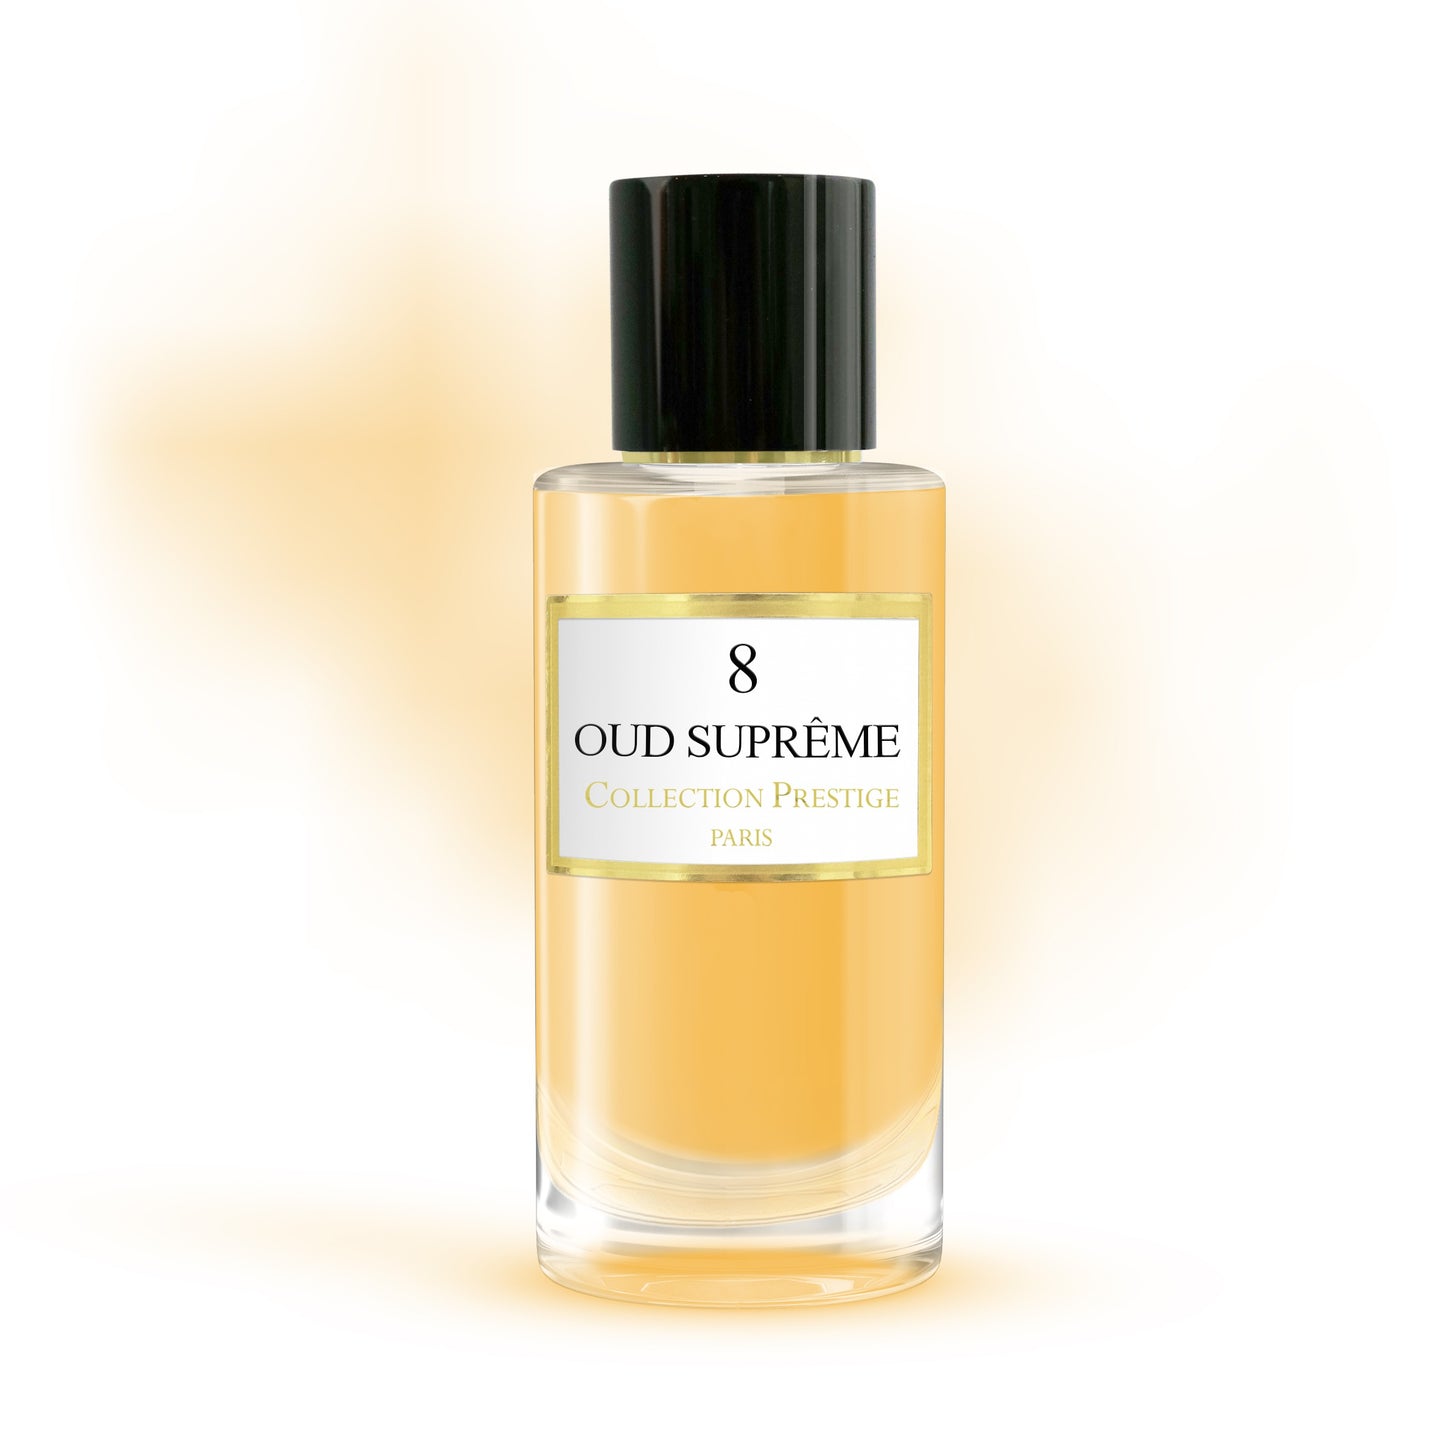 Collection Prestige - Oud Suprême - Eau de Parfum Mixte